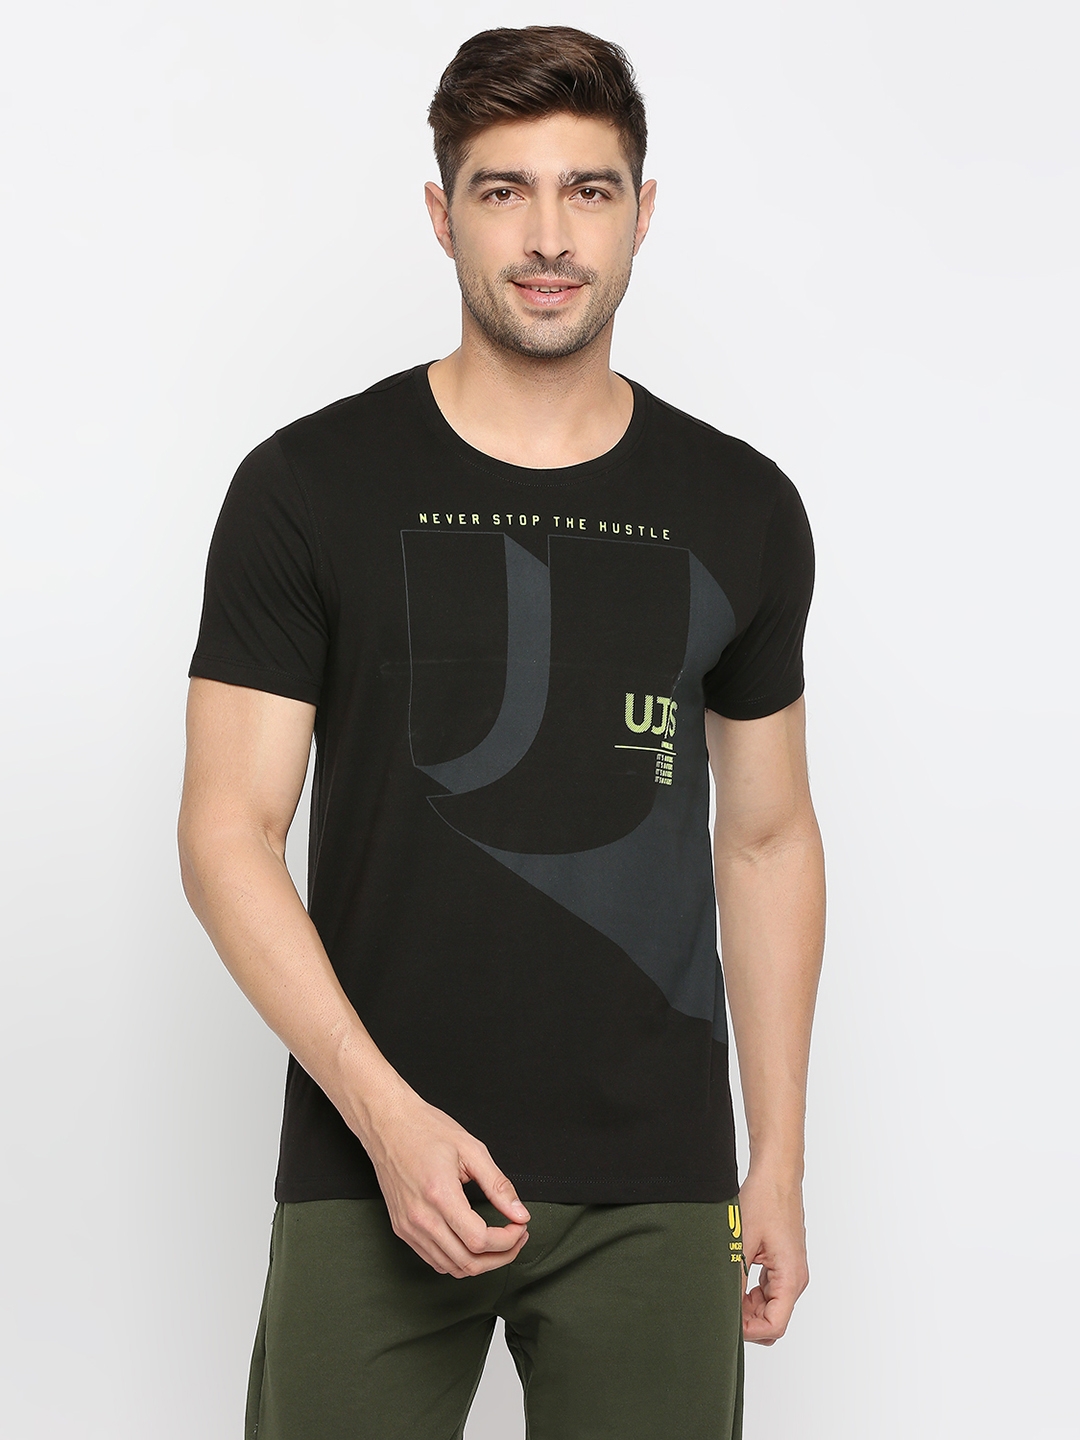 Underjeans by Spykar Men Black Cotton Round Neck Printed Tshirt